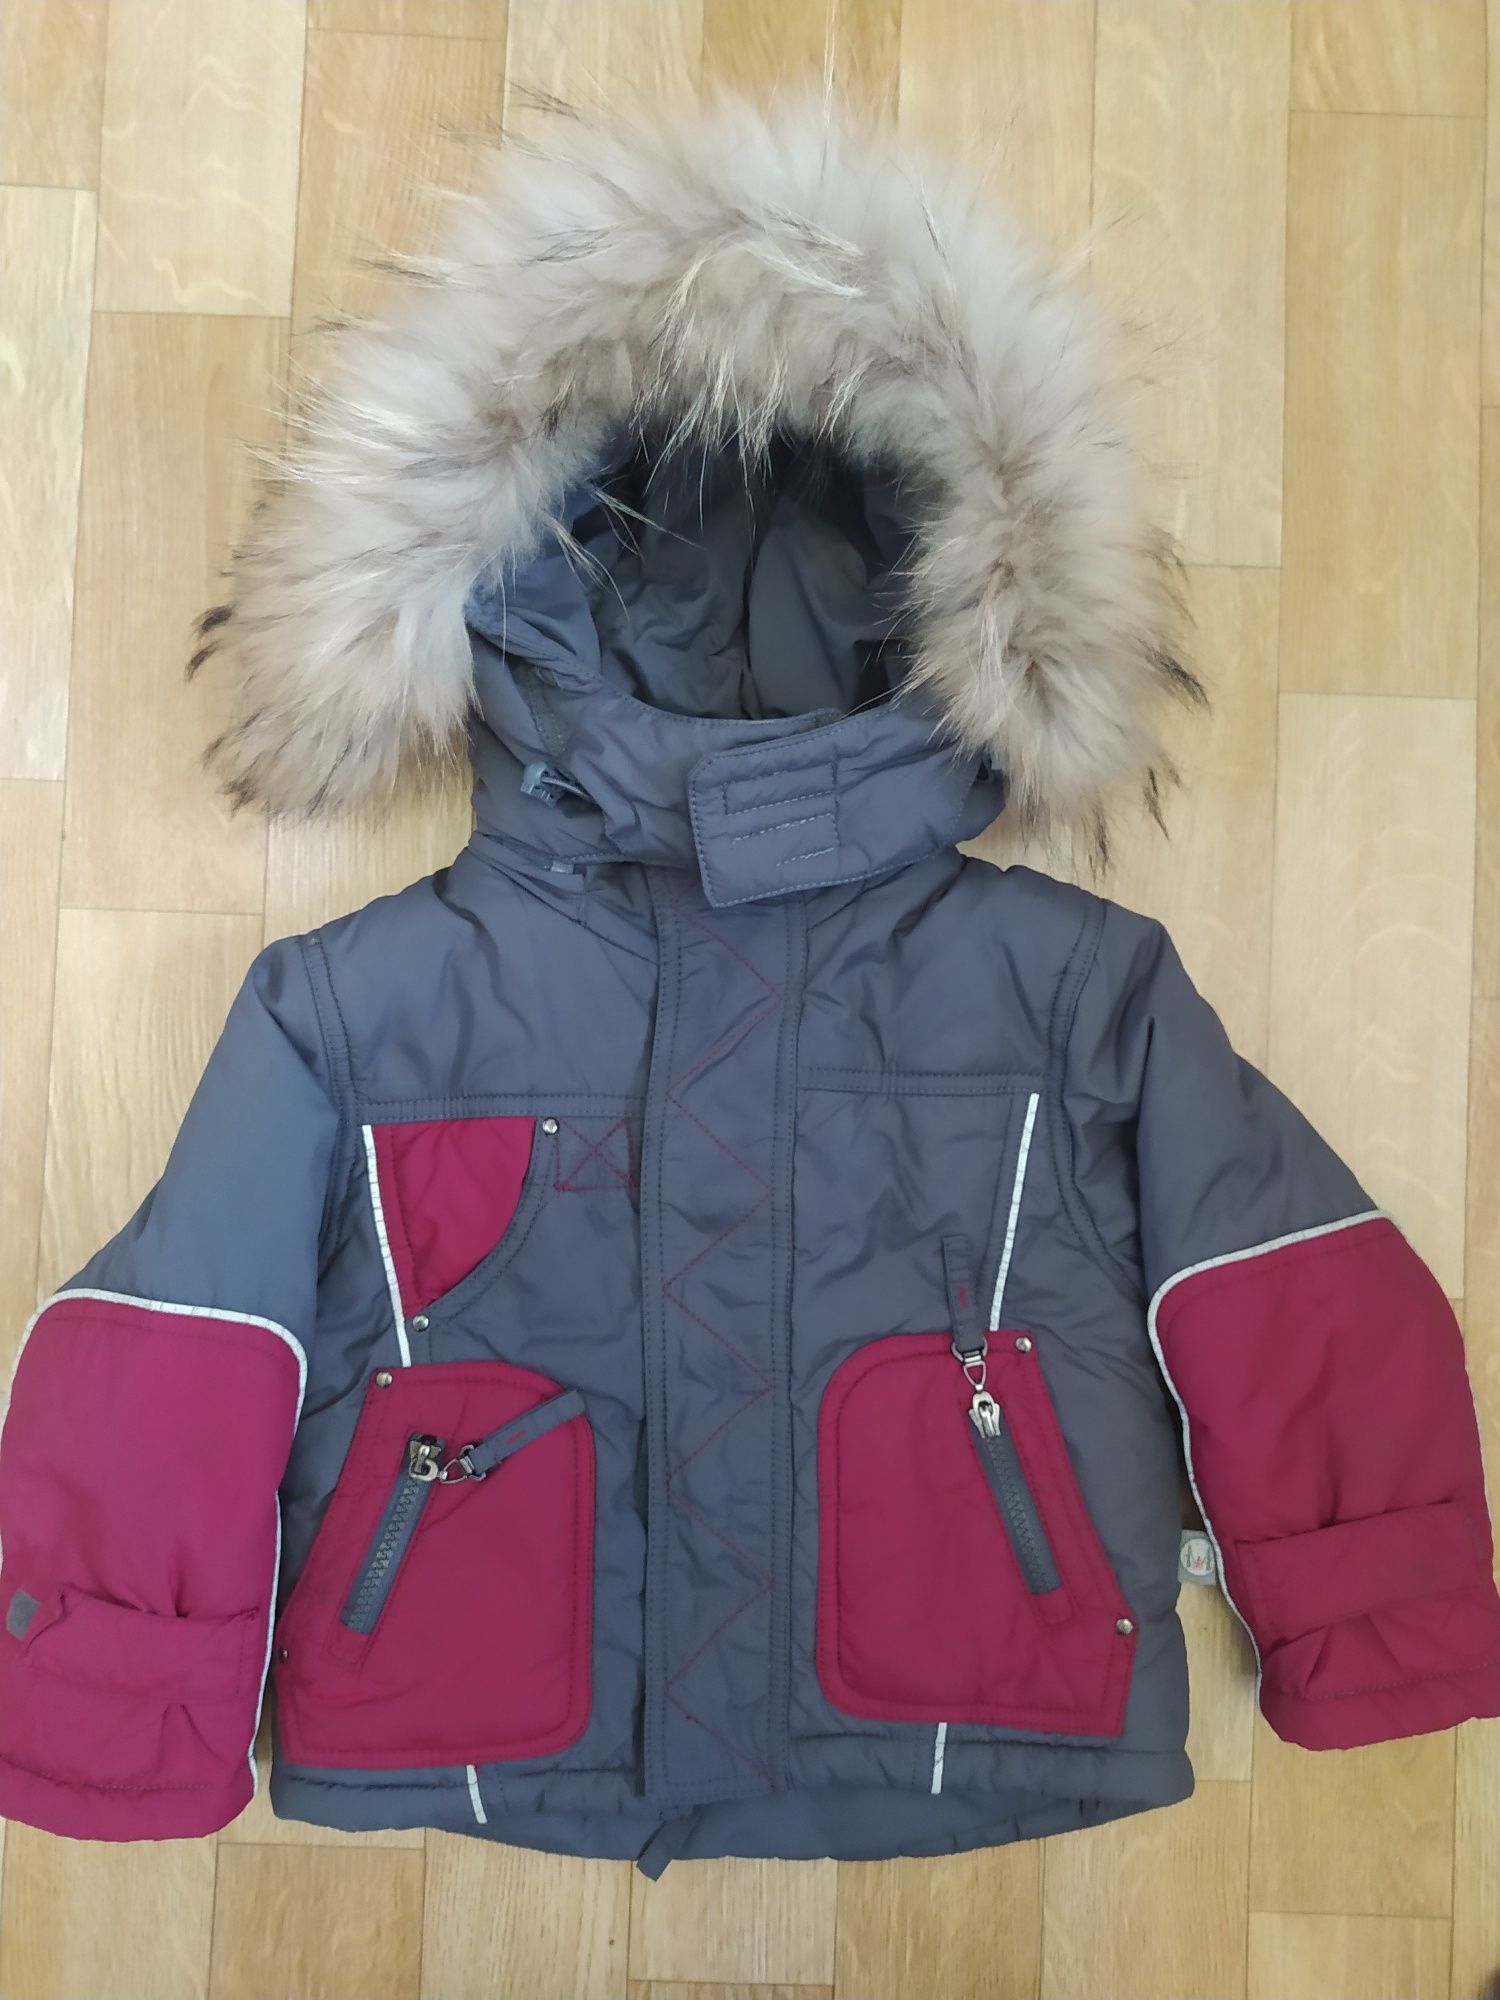 Зимний комплект куртка и полукомбинезон/штаны 80 р-р